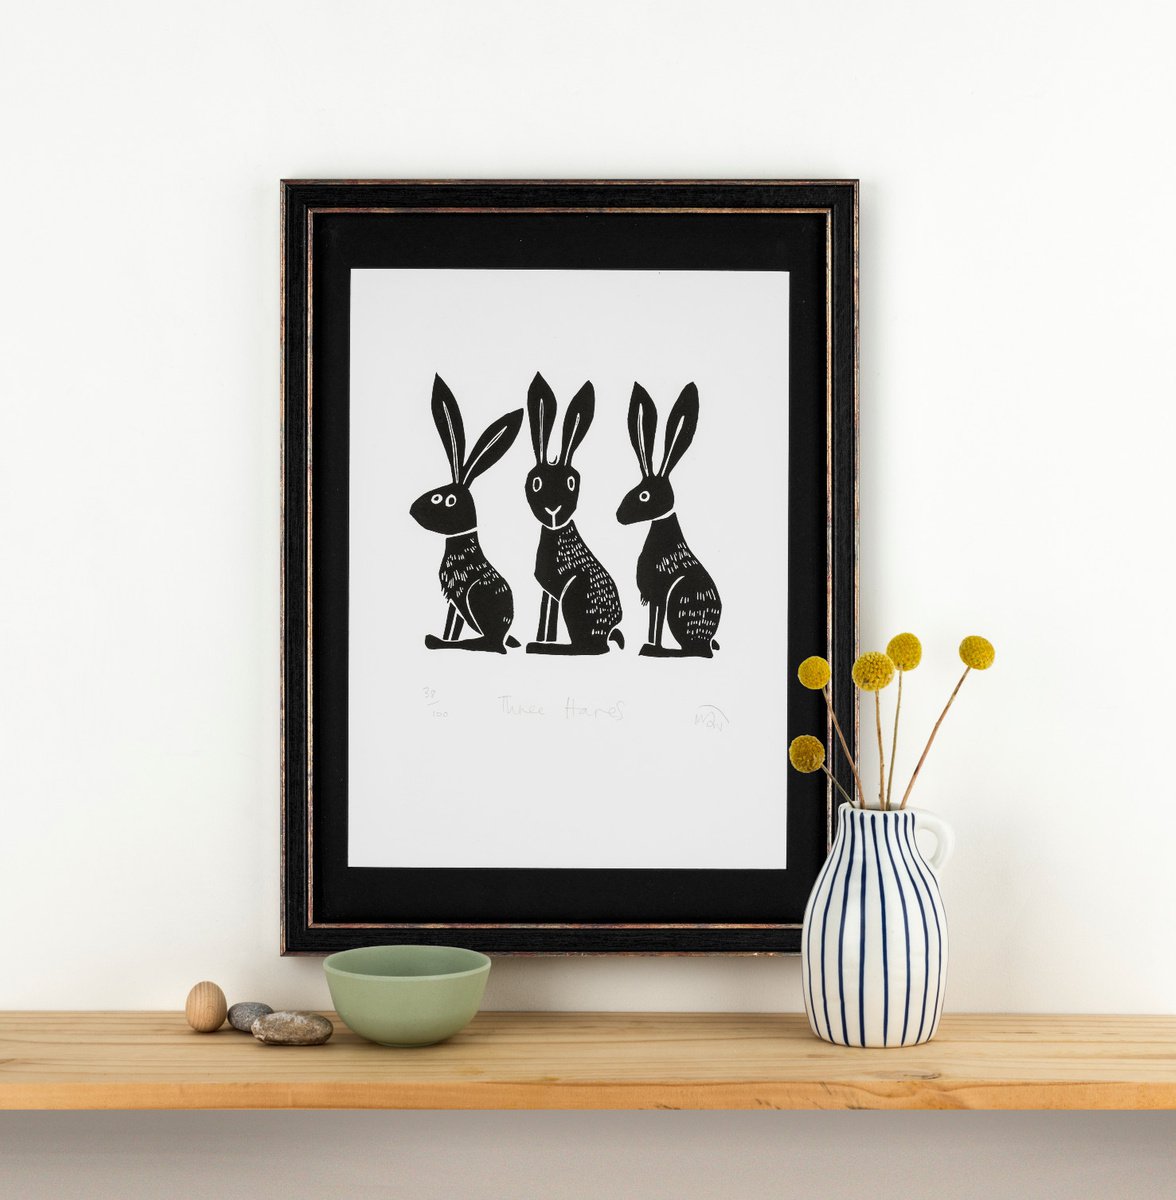 Three Hares - lino cut print by Melanie Wickham